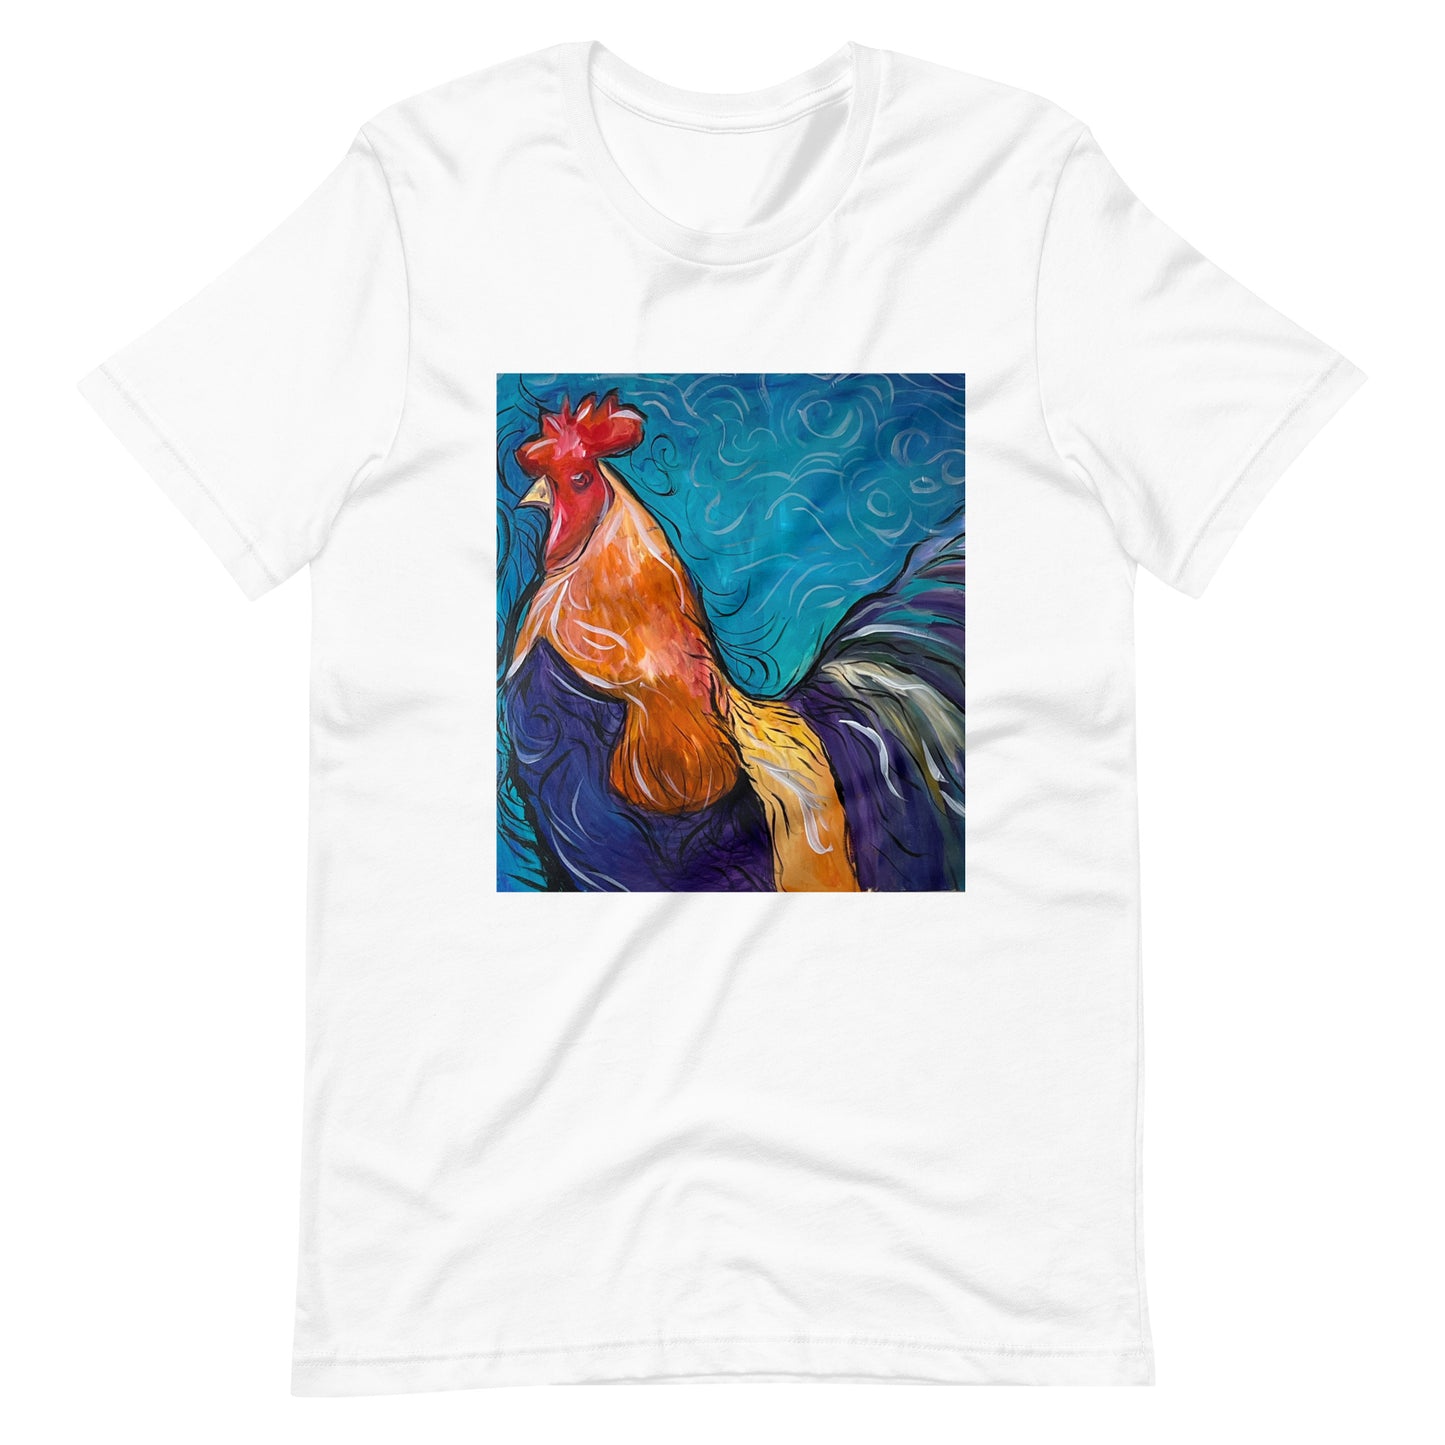 Dixie Chicken Unisex t-shirt